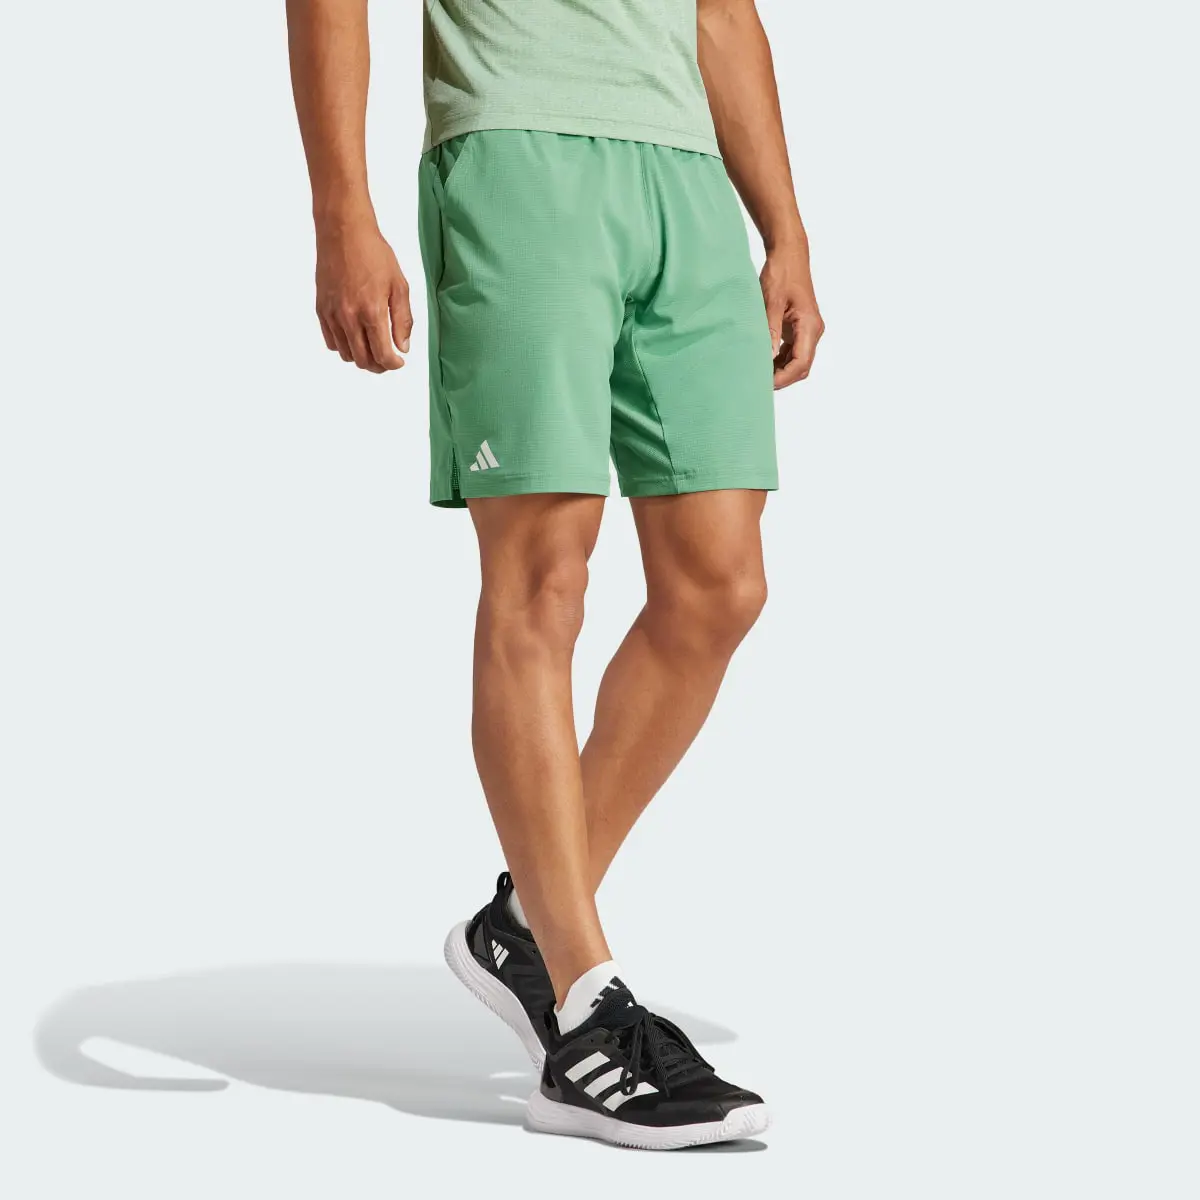 Adidas Tennis Ergo Shorts. 3